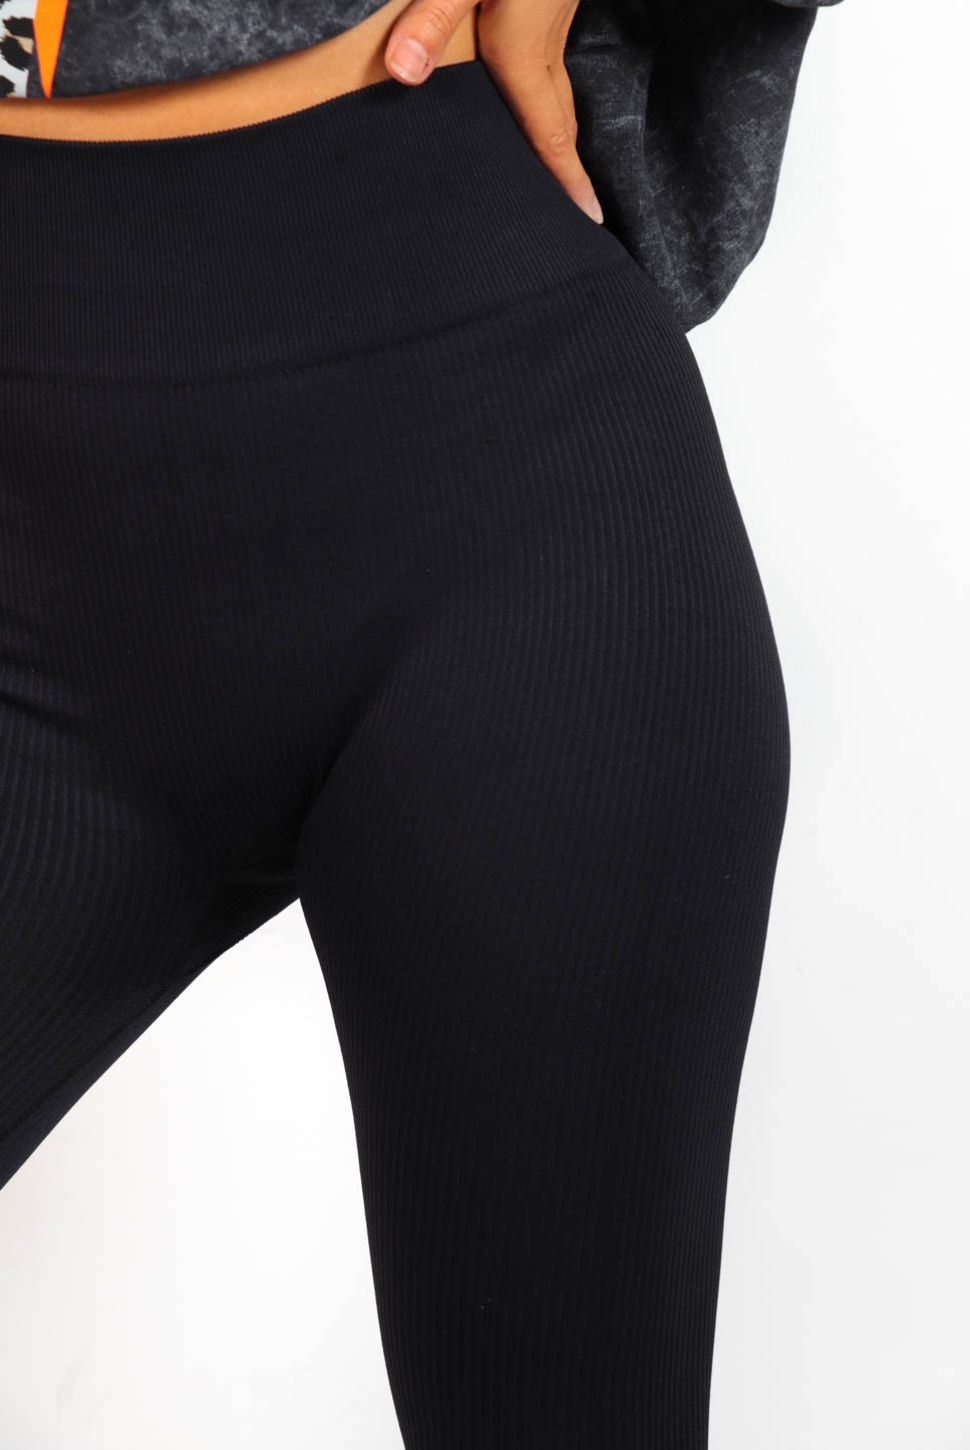 Zelda Basic Fleece Lined Leggings in Black | iCLOTHING - iCLOTHING